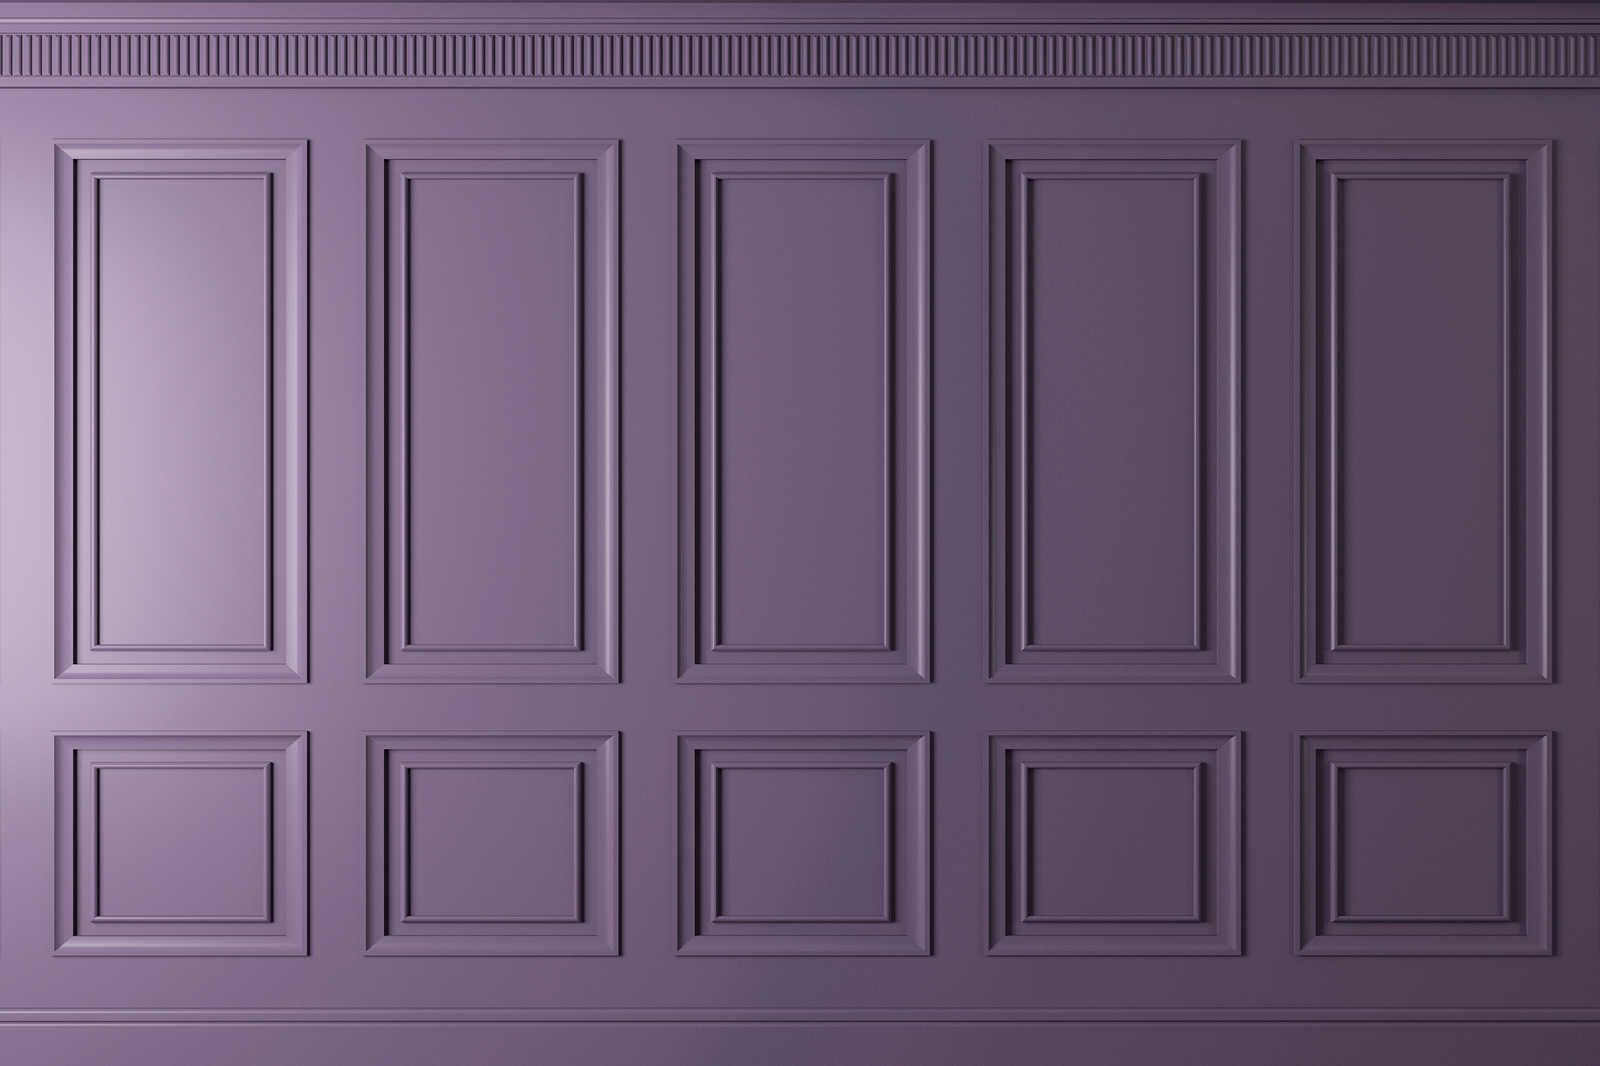             Kensington 3 - 3D toile lambris bois violet foncé, violet - 0,90 m x 0,60 m
        